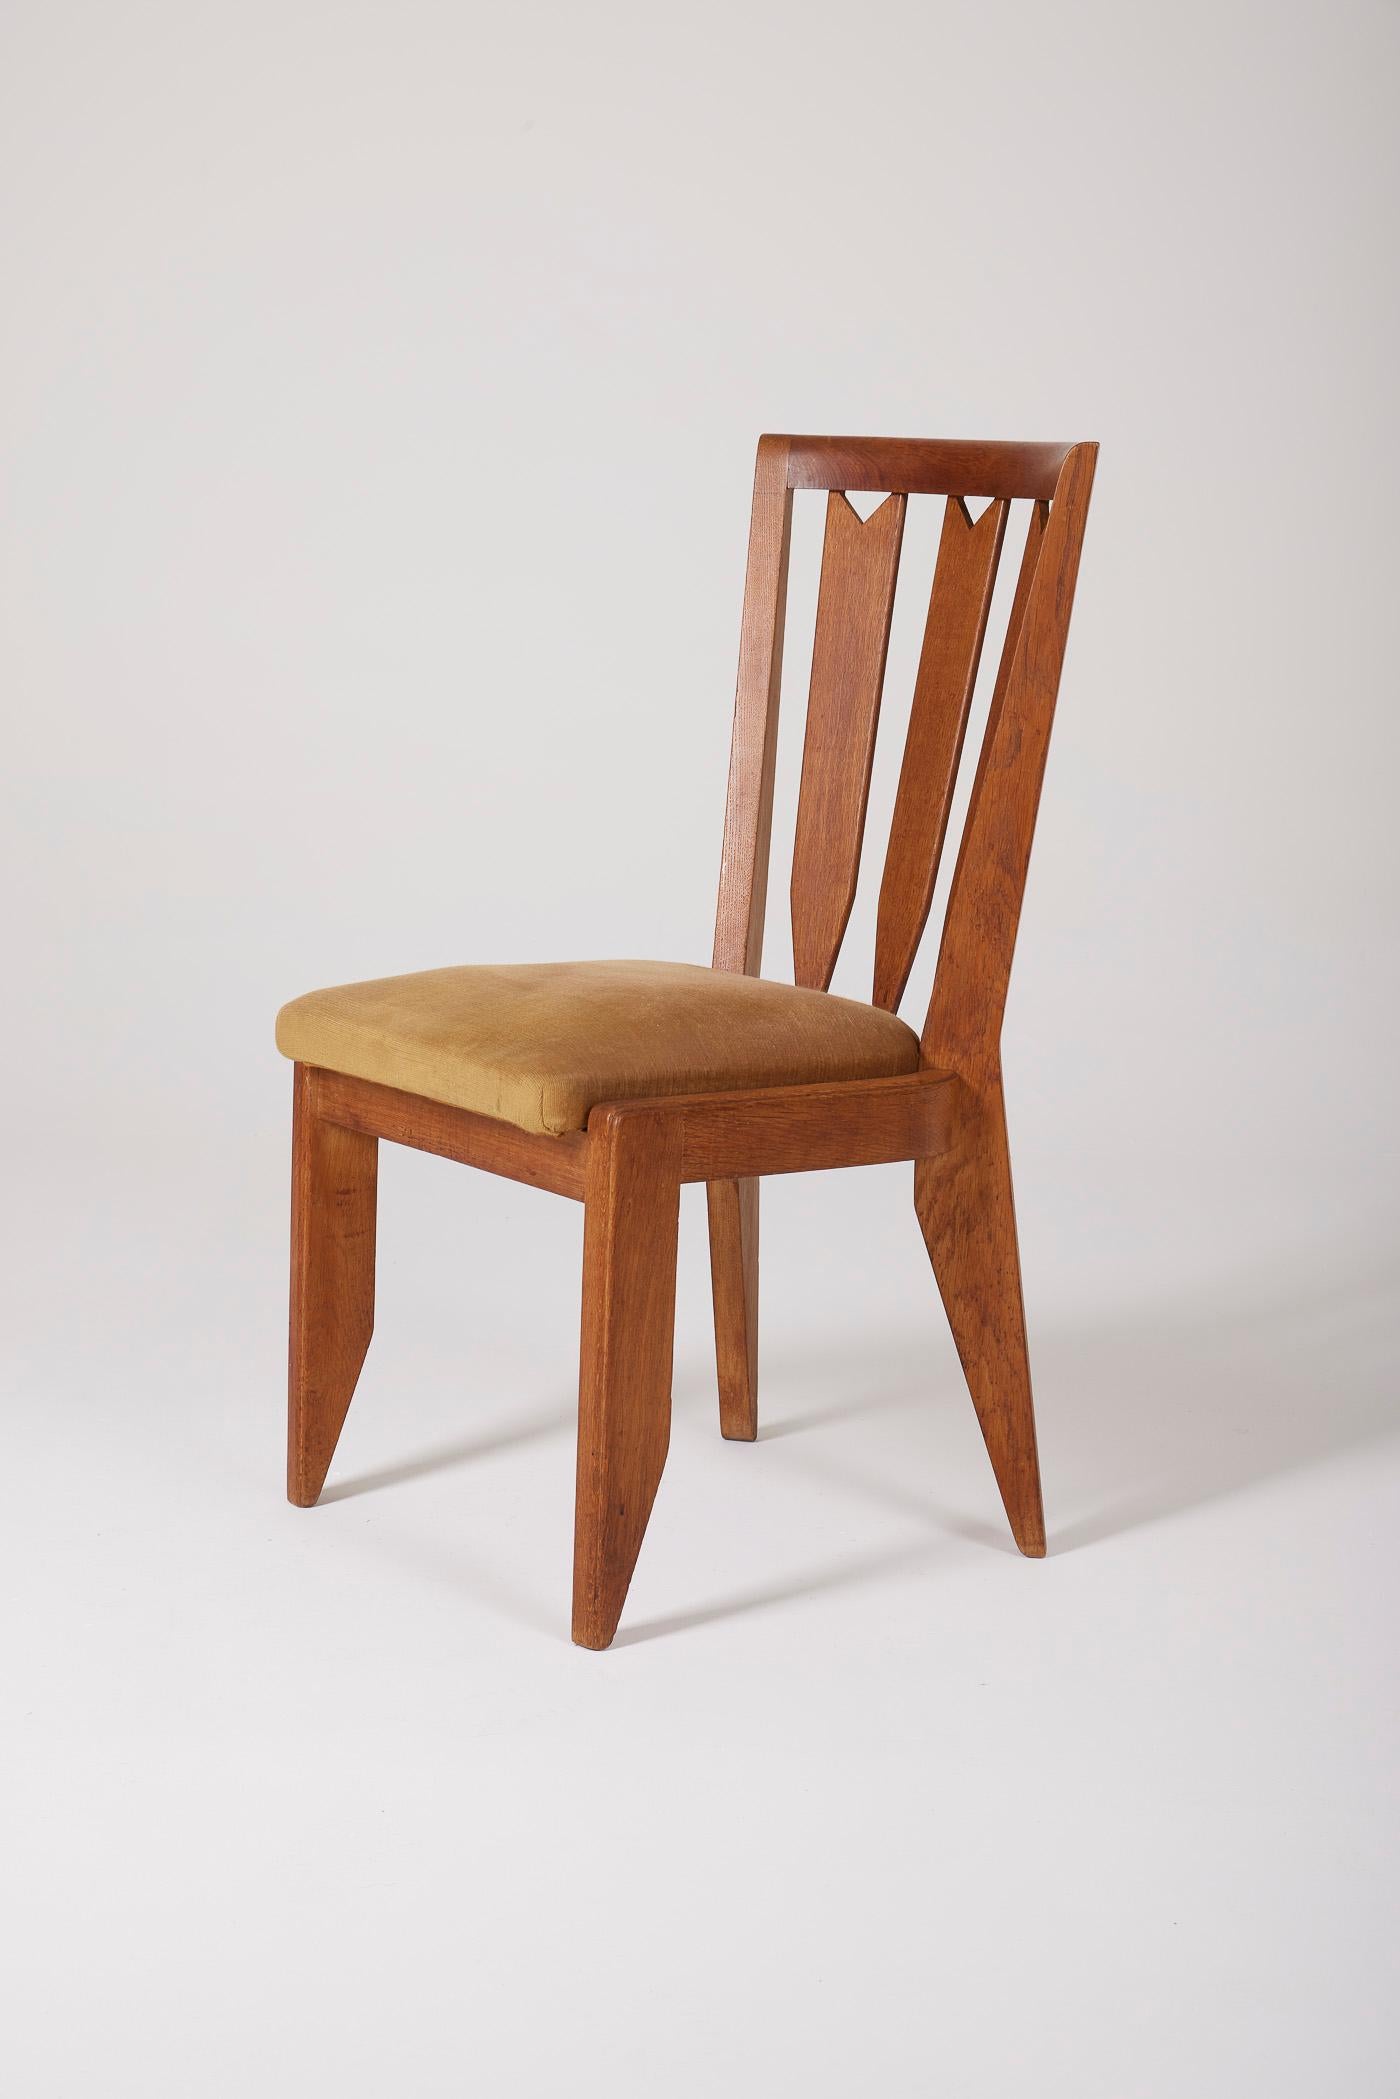 Stuhl der Designer Robert Guillerme und Jacques Chambron, 1960er Jahre. Die Struktur ist aus Eiche, der Sitz aus Stoff. Perfekter Zustand.

LP2030 